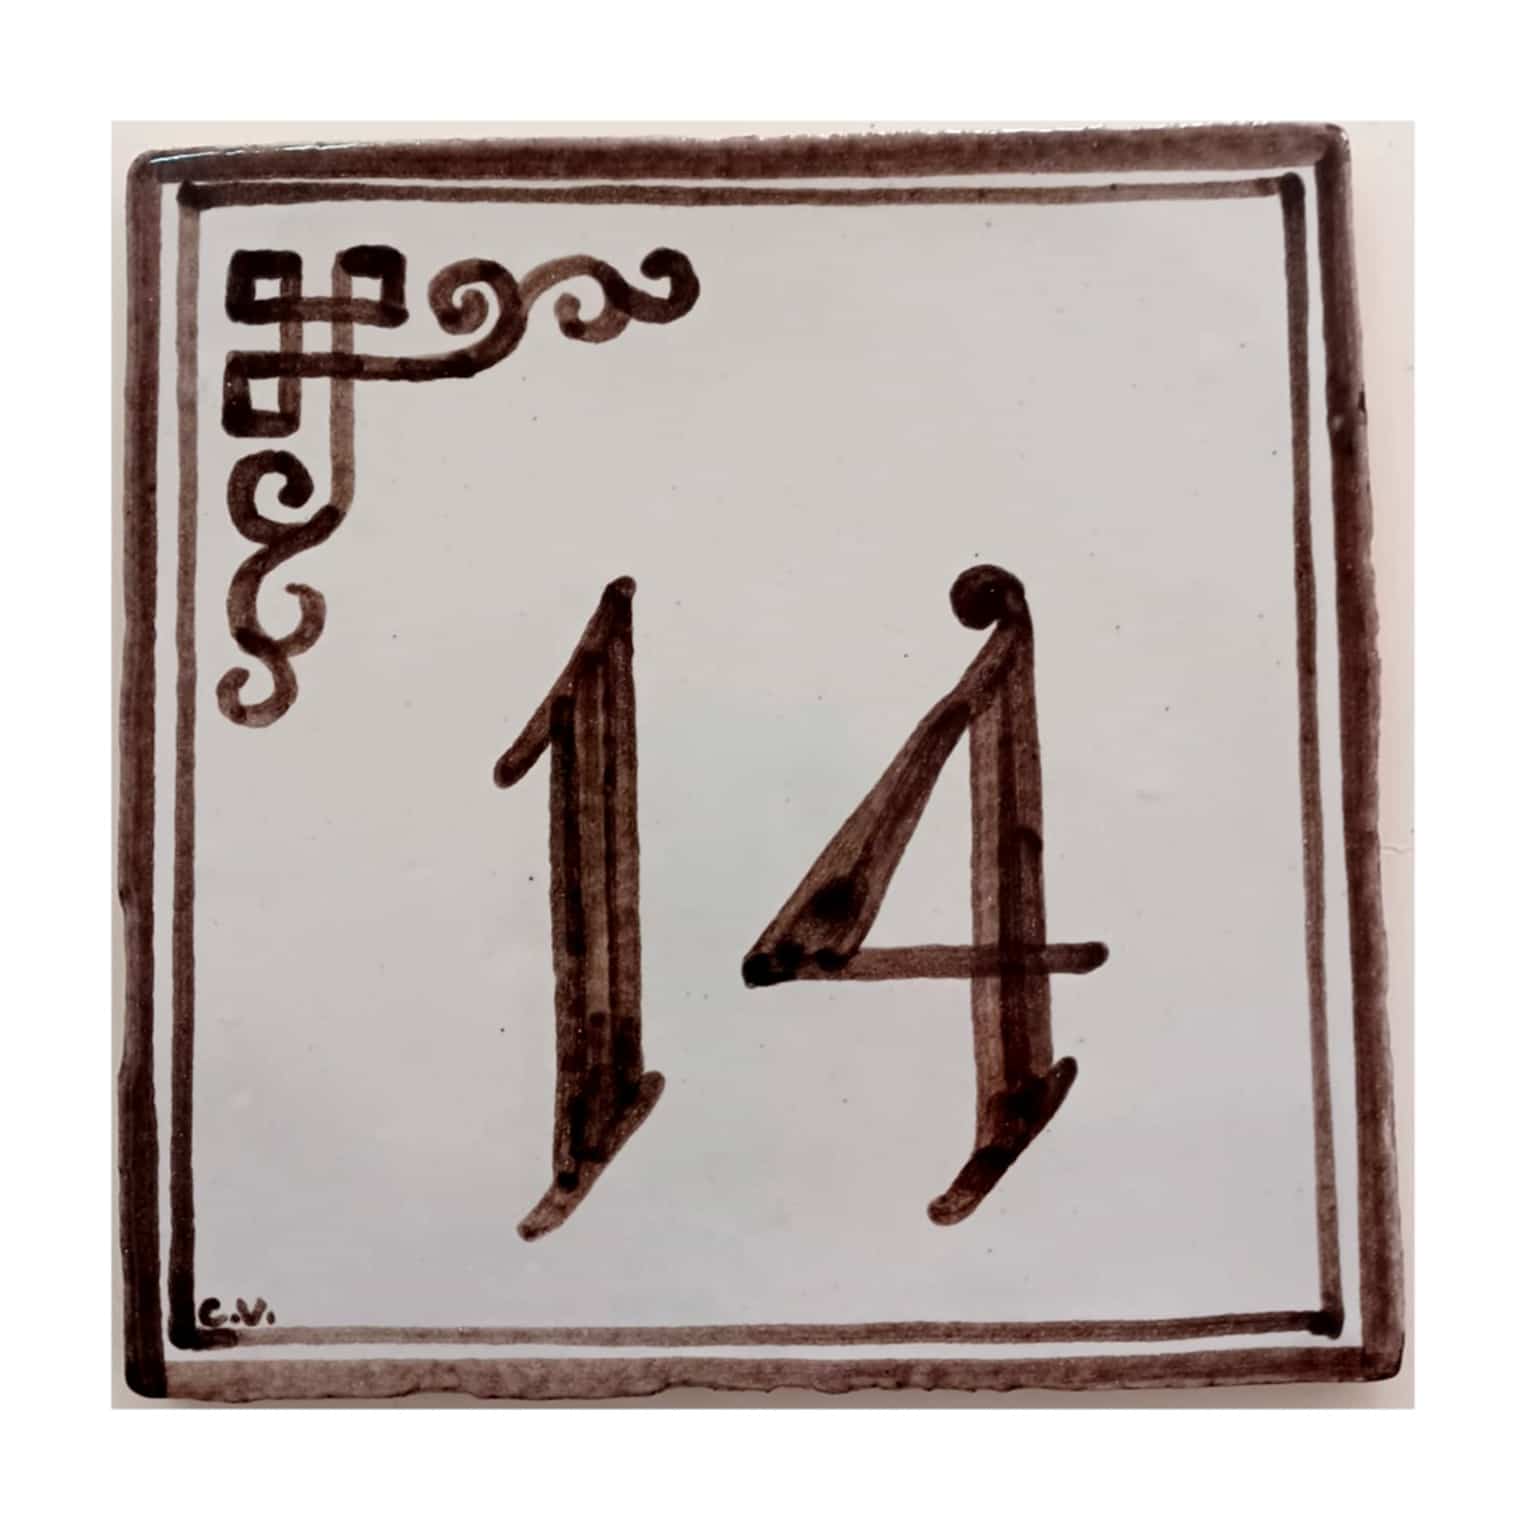 Azulejos con números, números artesanos, números personalizados, números rústicos, baldosa número, azulejo número antiguo, decoradores